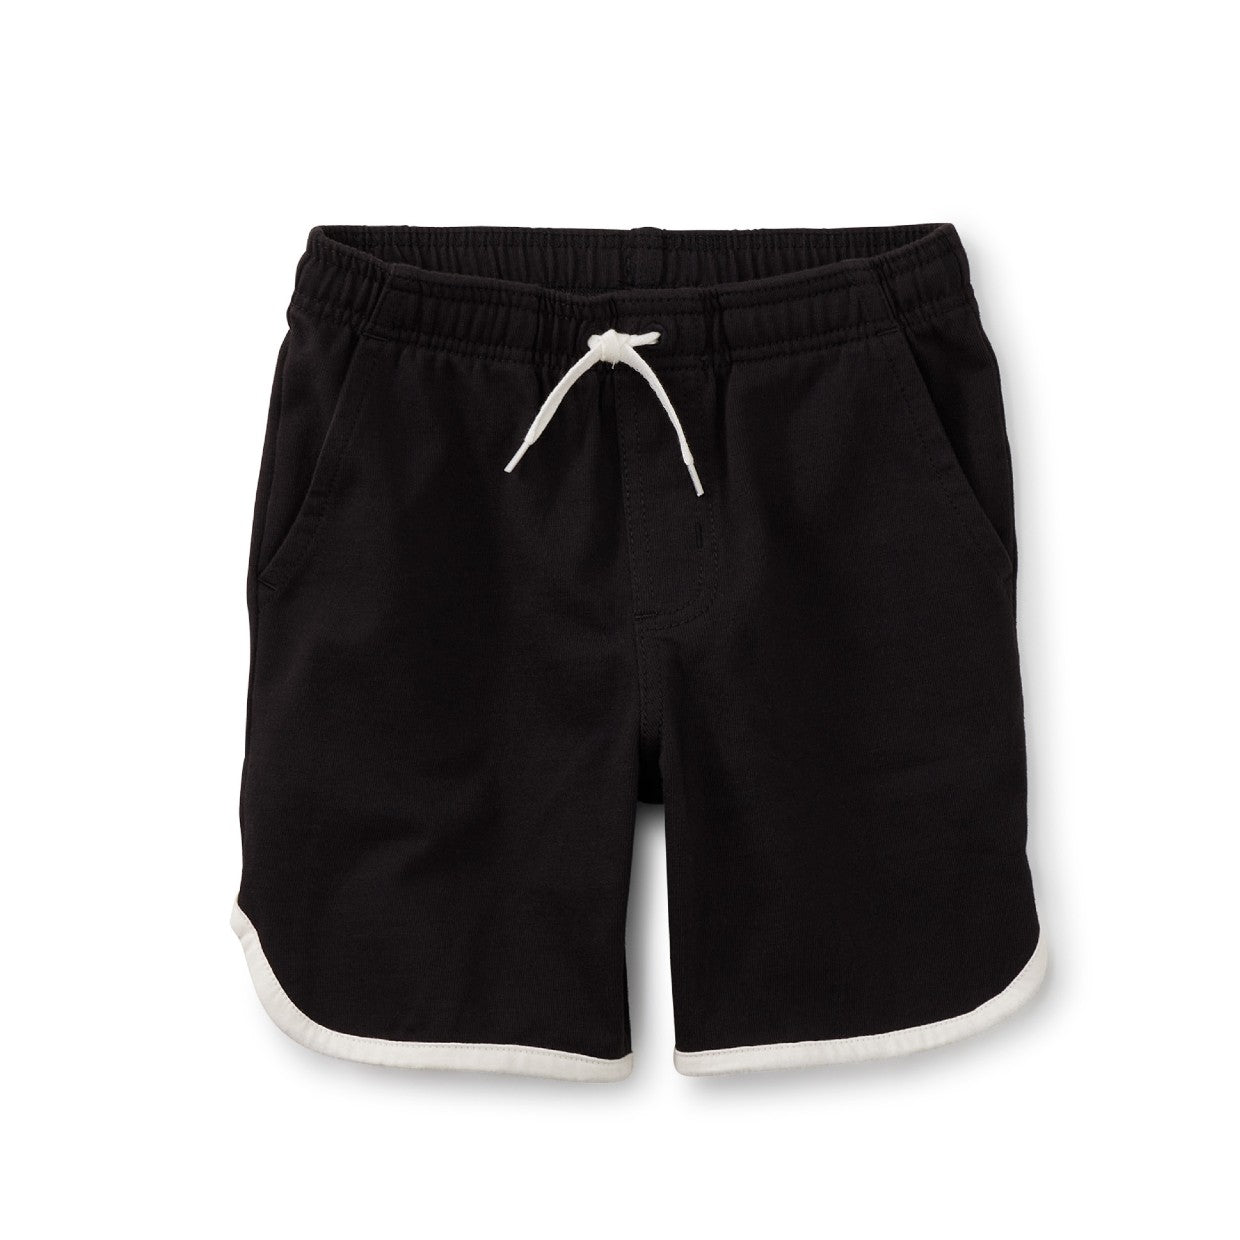 Ringer Shorts: Jet Black